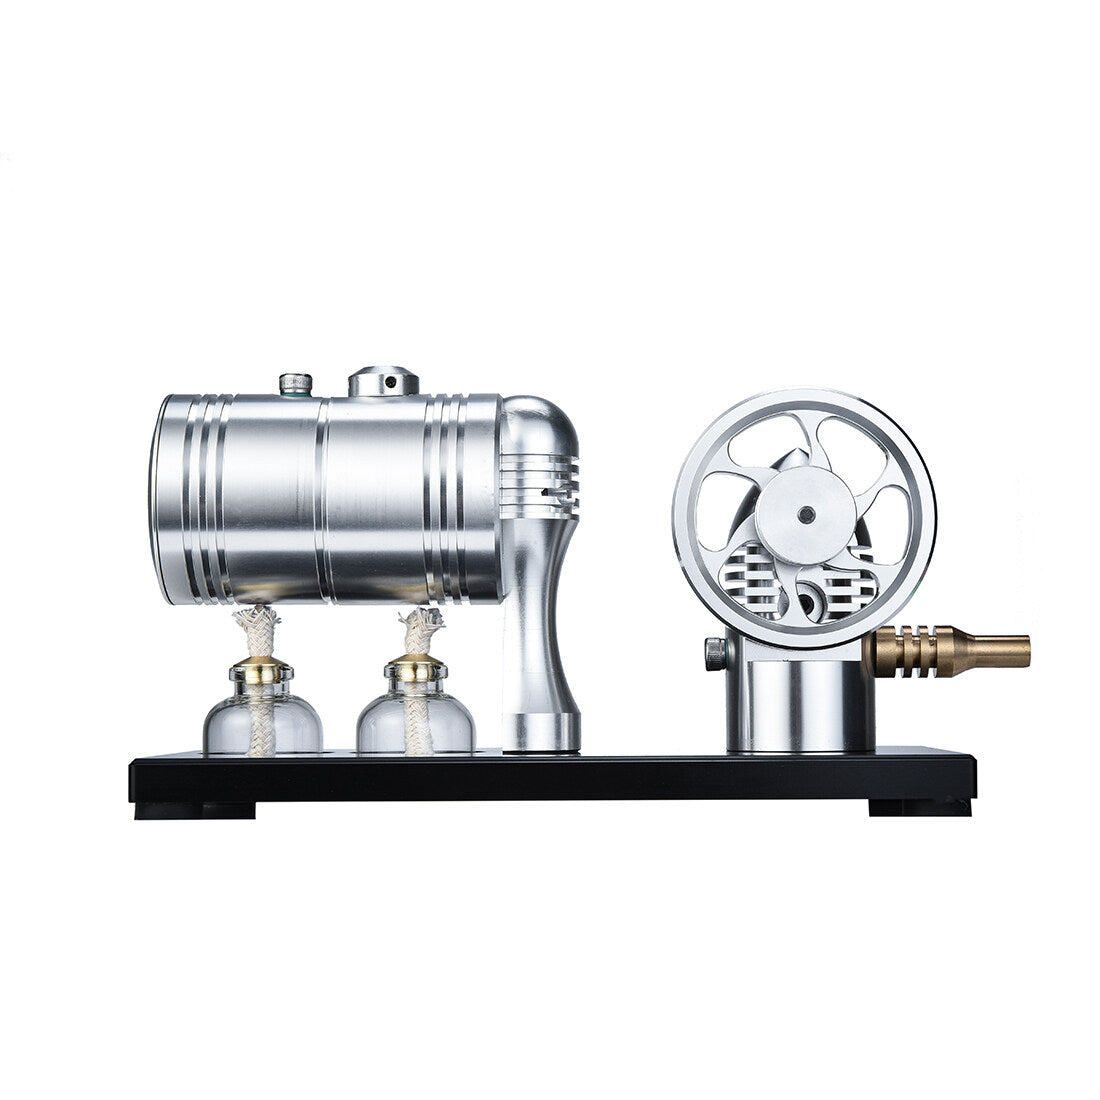 Retro-Dampfmaschinenmodell mit Kessel, Basis und Alkohollampe 1